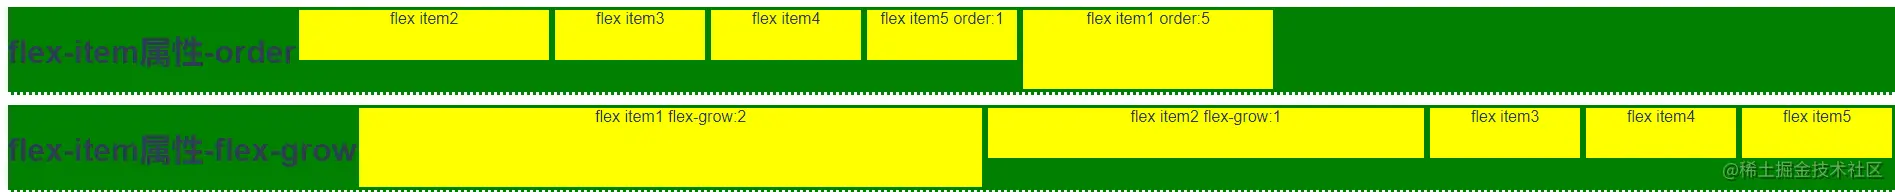 flex-item.png